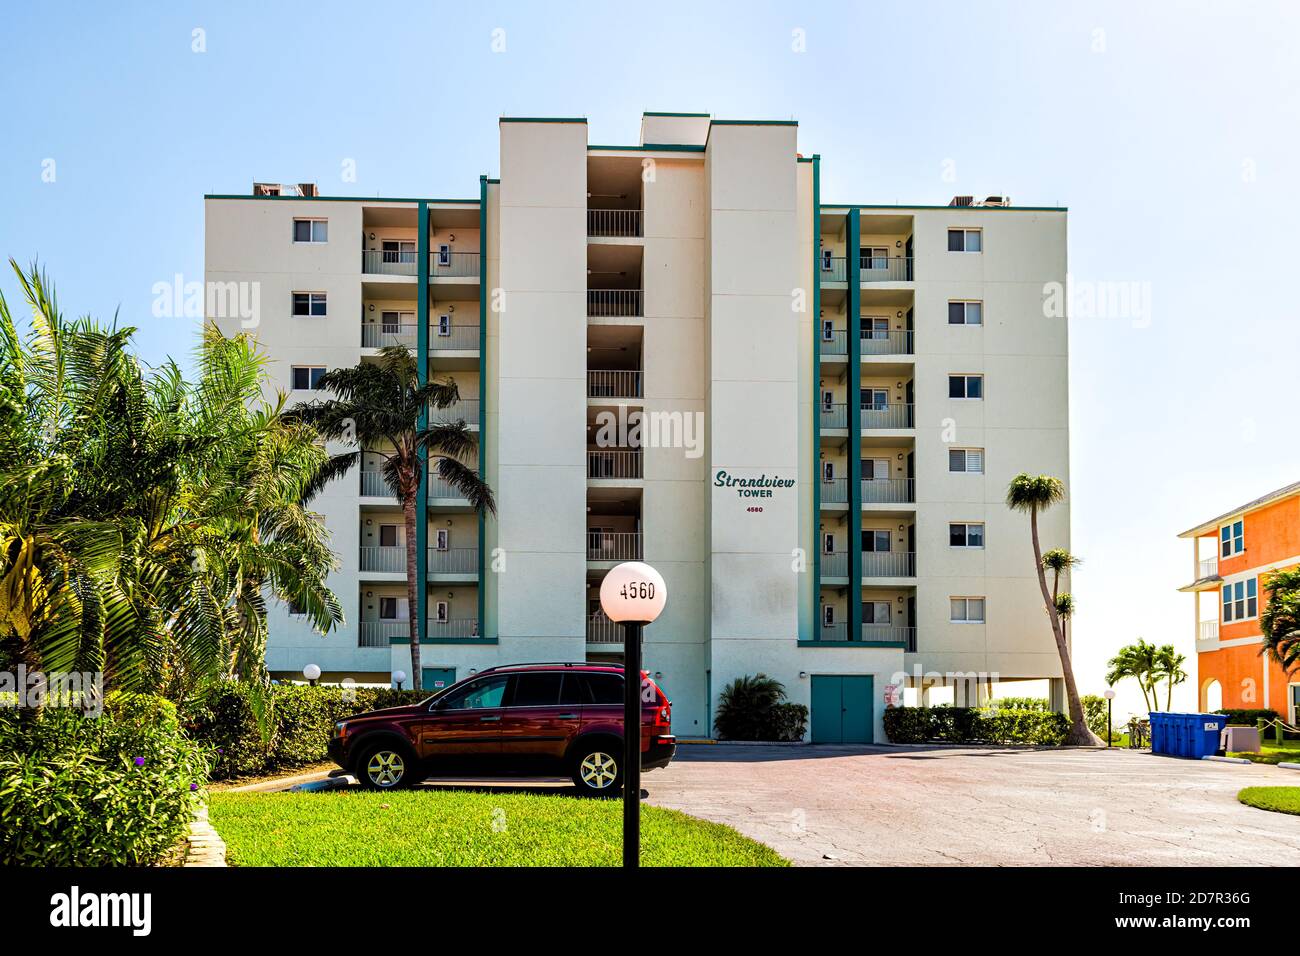 Fort Myers Beach, Stati Uniti d'America - 29 aprile 2018: Costa del golfo della Florida con l'insegna dell'edificio dell'appartamento dell'hotel chiamato Strandview Tower Waterfront Architecture An Foto Stock